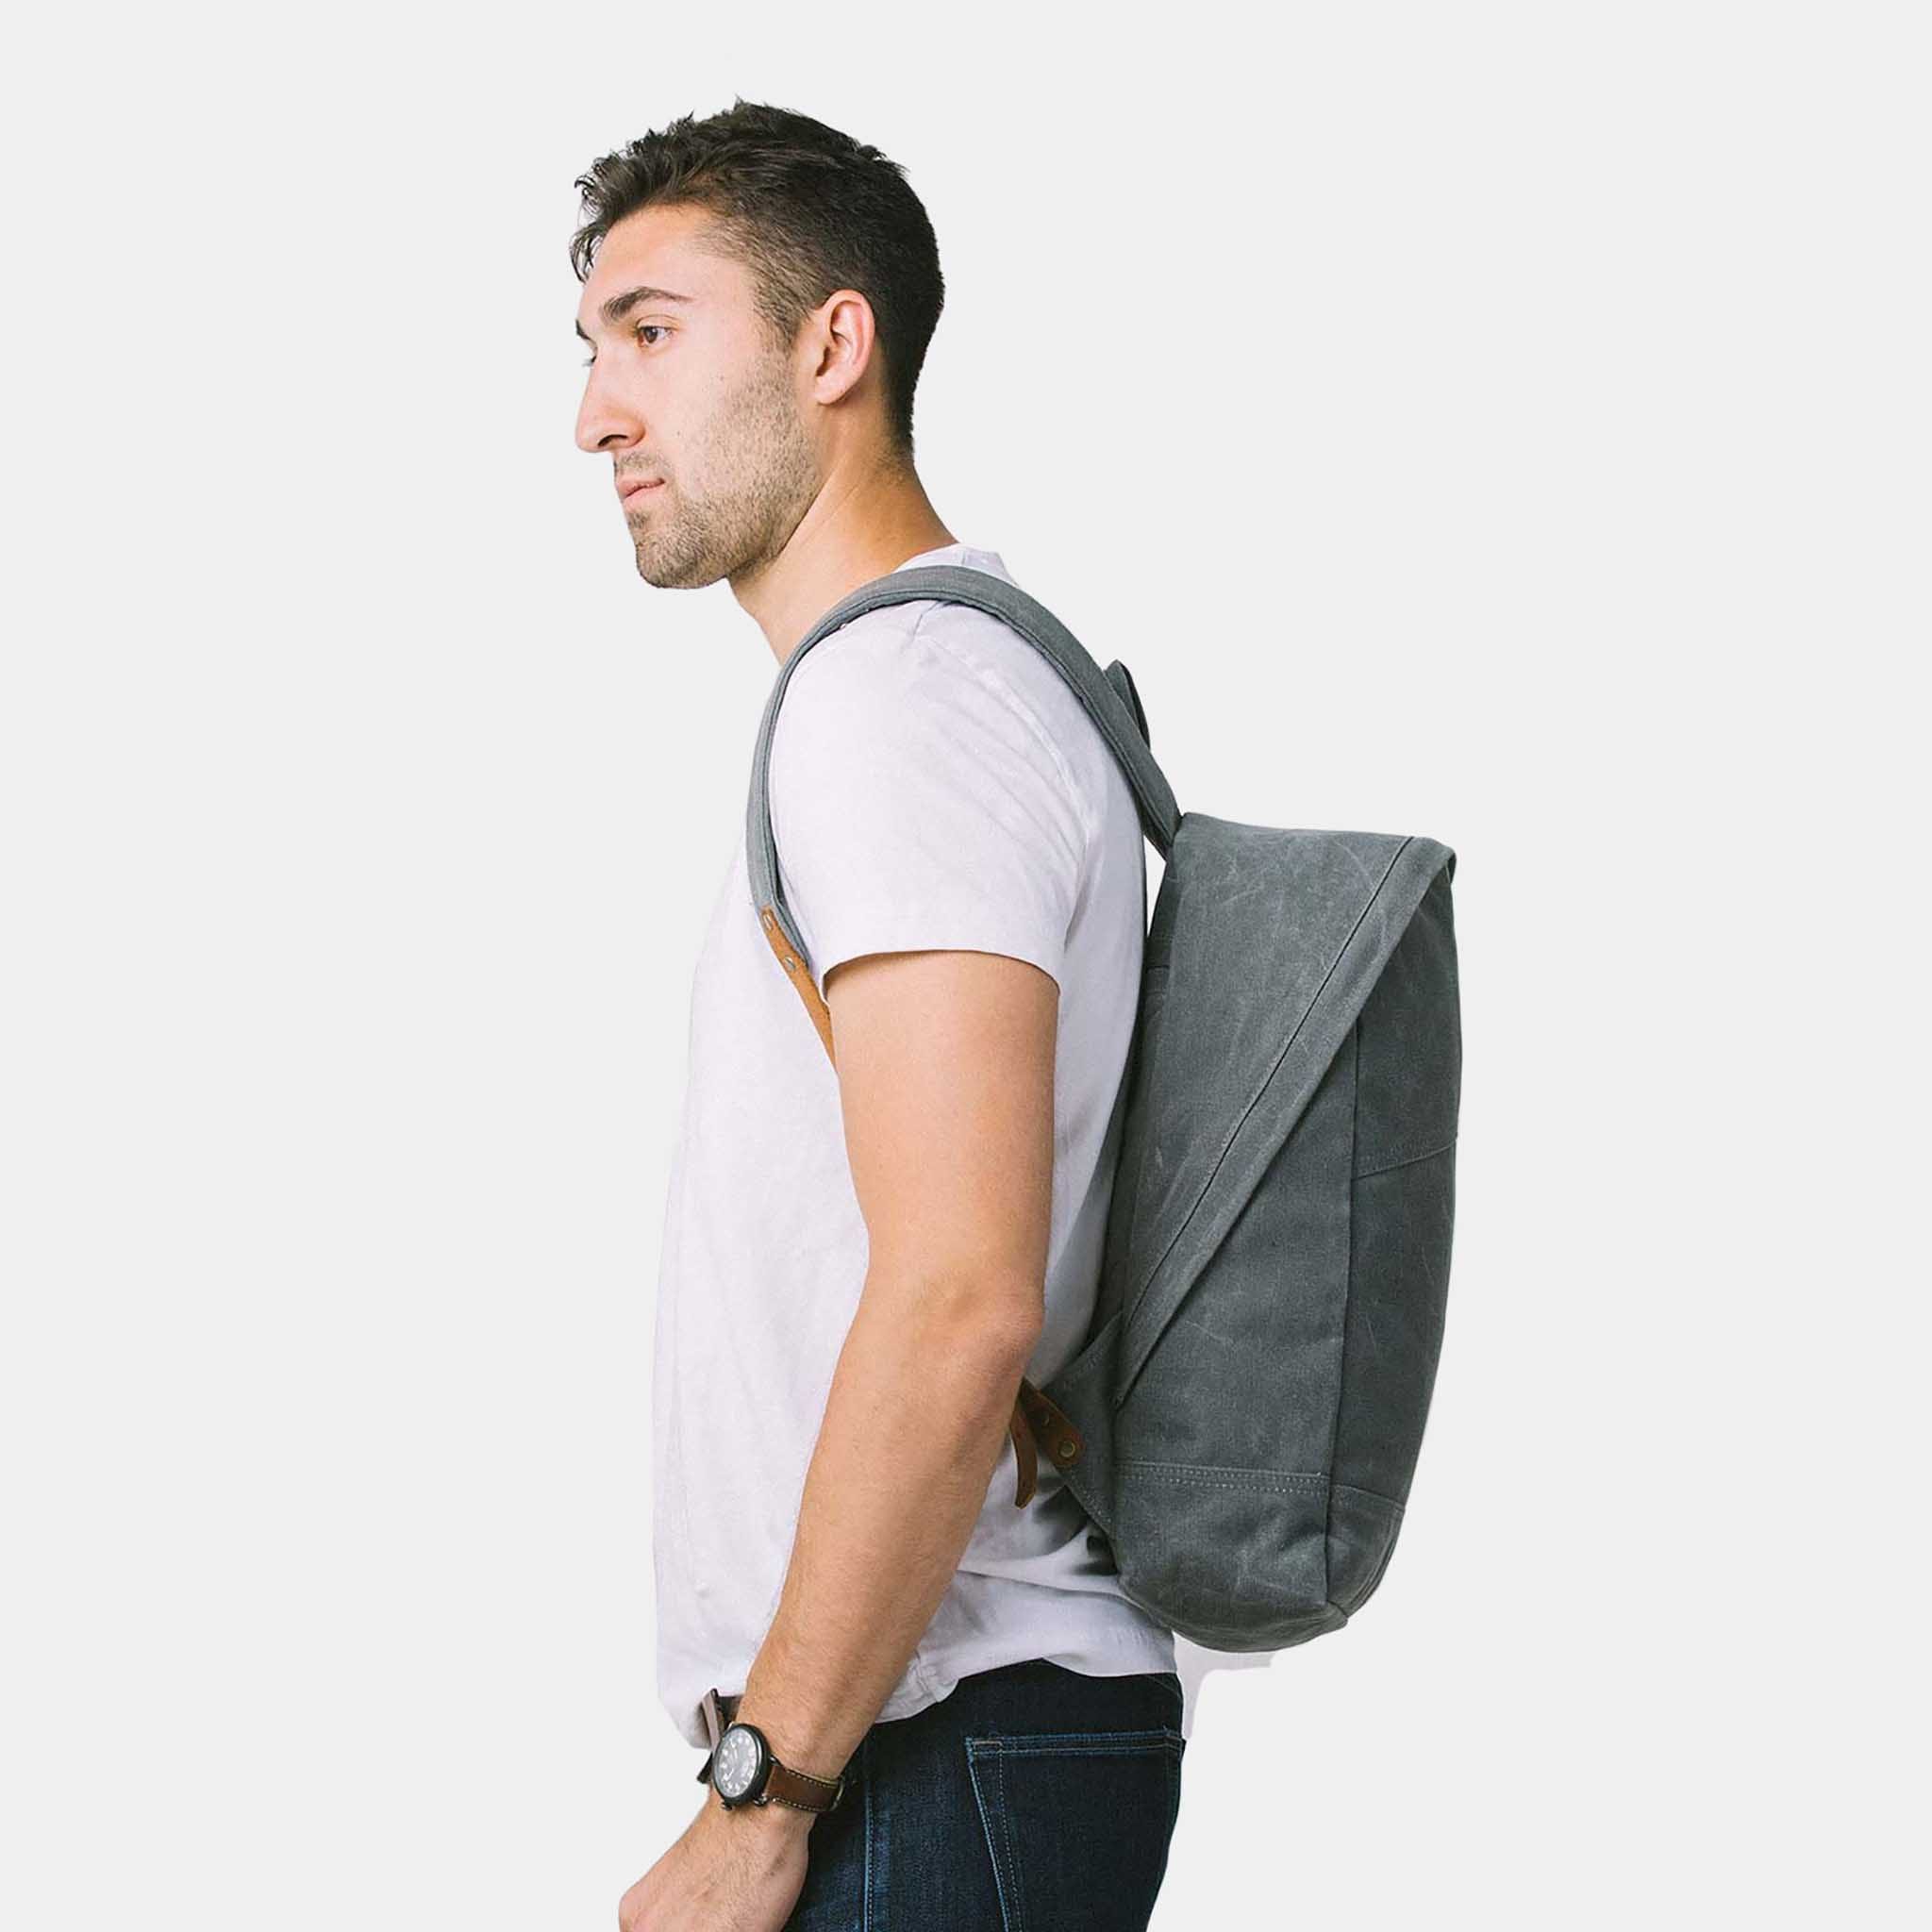 Zip Backpack